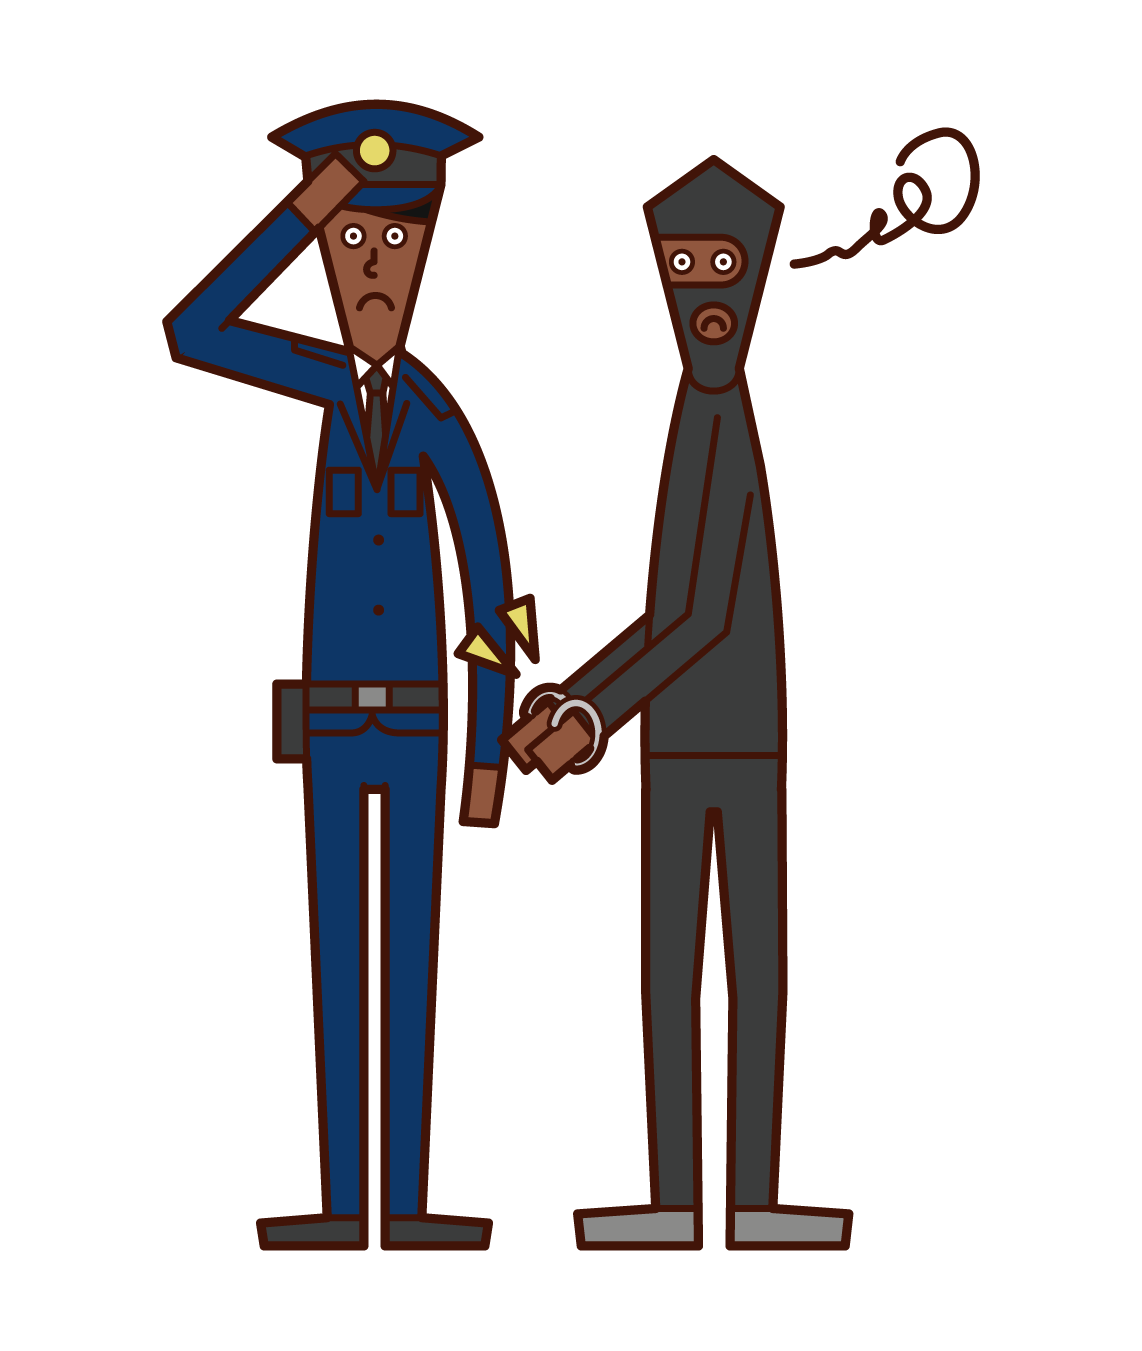 Illustration of a police officer (man) arresting the criminal